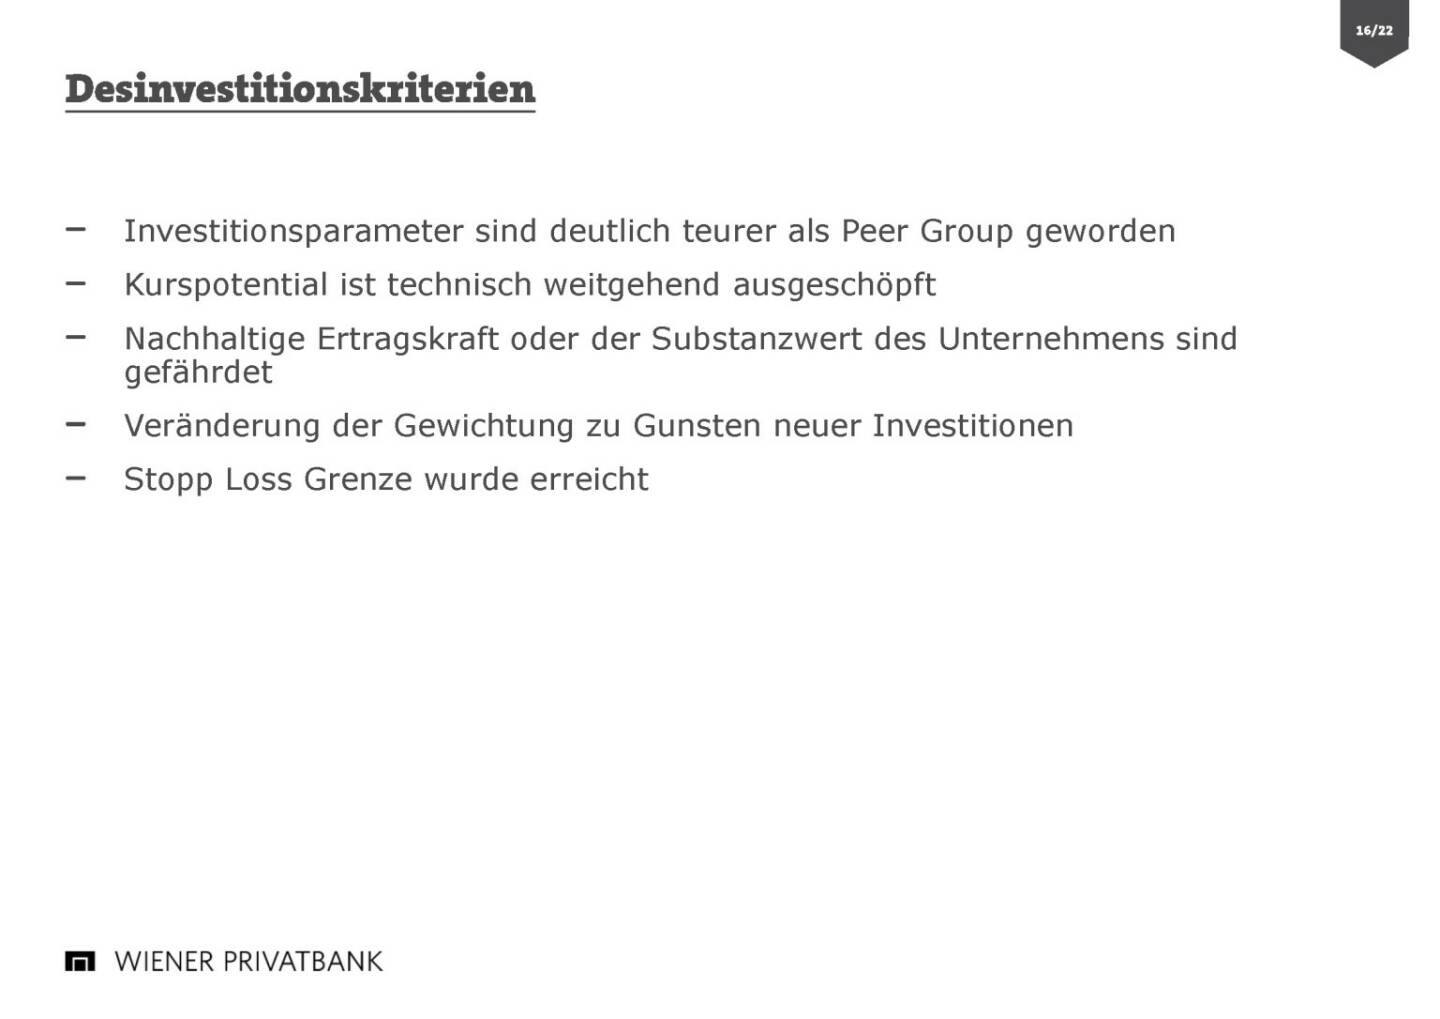 Wiener Privatbank - Deinvestitionskriterien